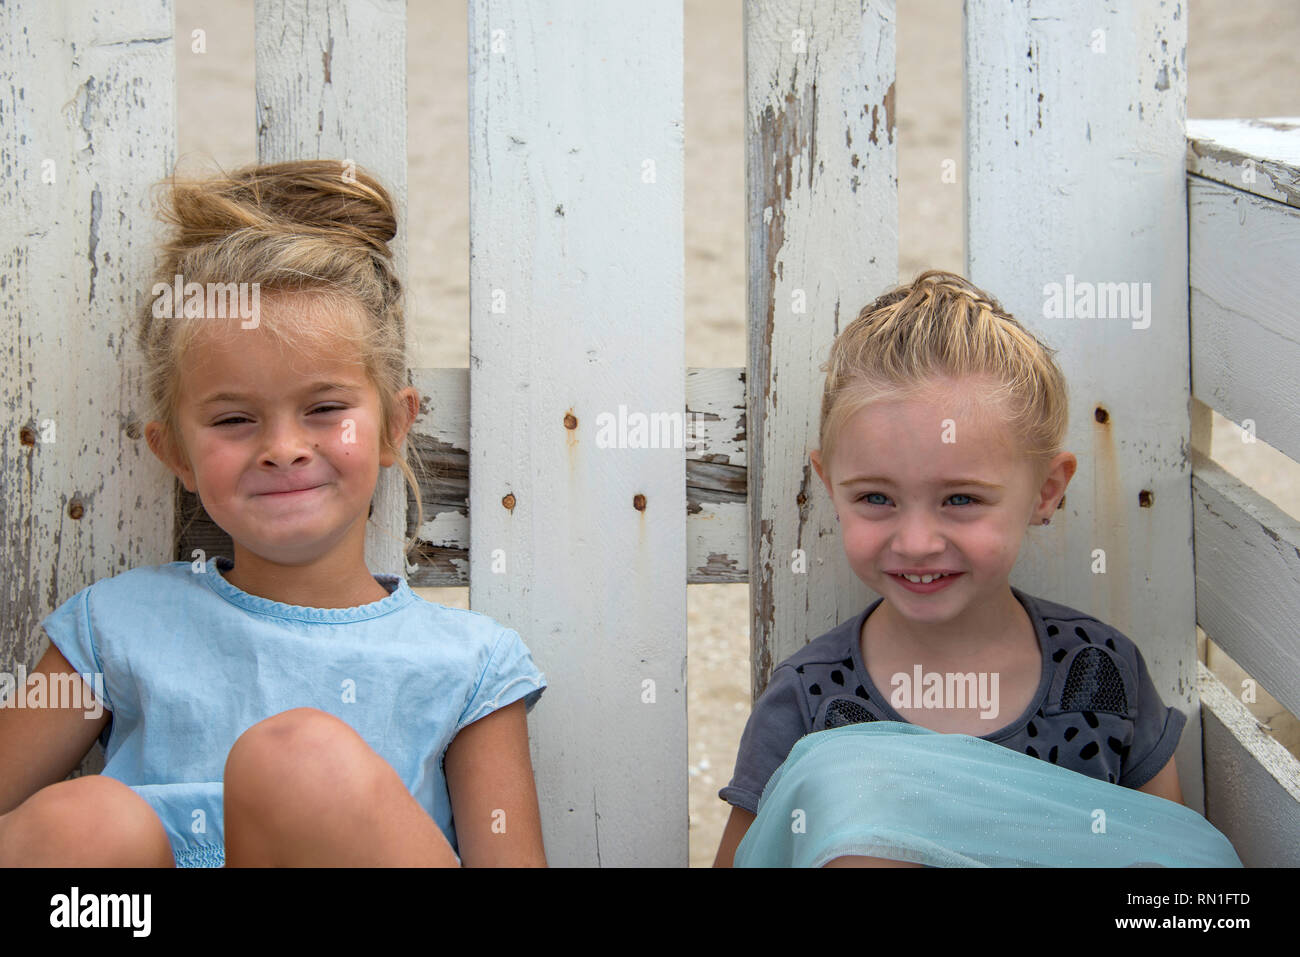 Rockanje, Niederlande, 29-Aug-2015: twol bisschen Mädchen sitzt auf einem Stuhl Maid von Paletten und schauen und lächeln in die Kamera Stockfoto